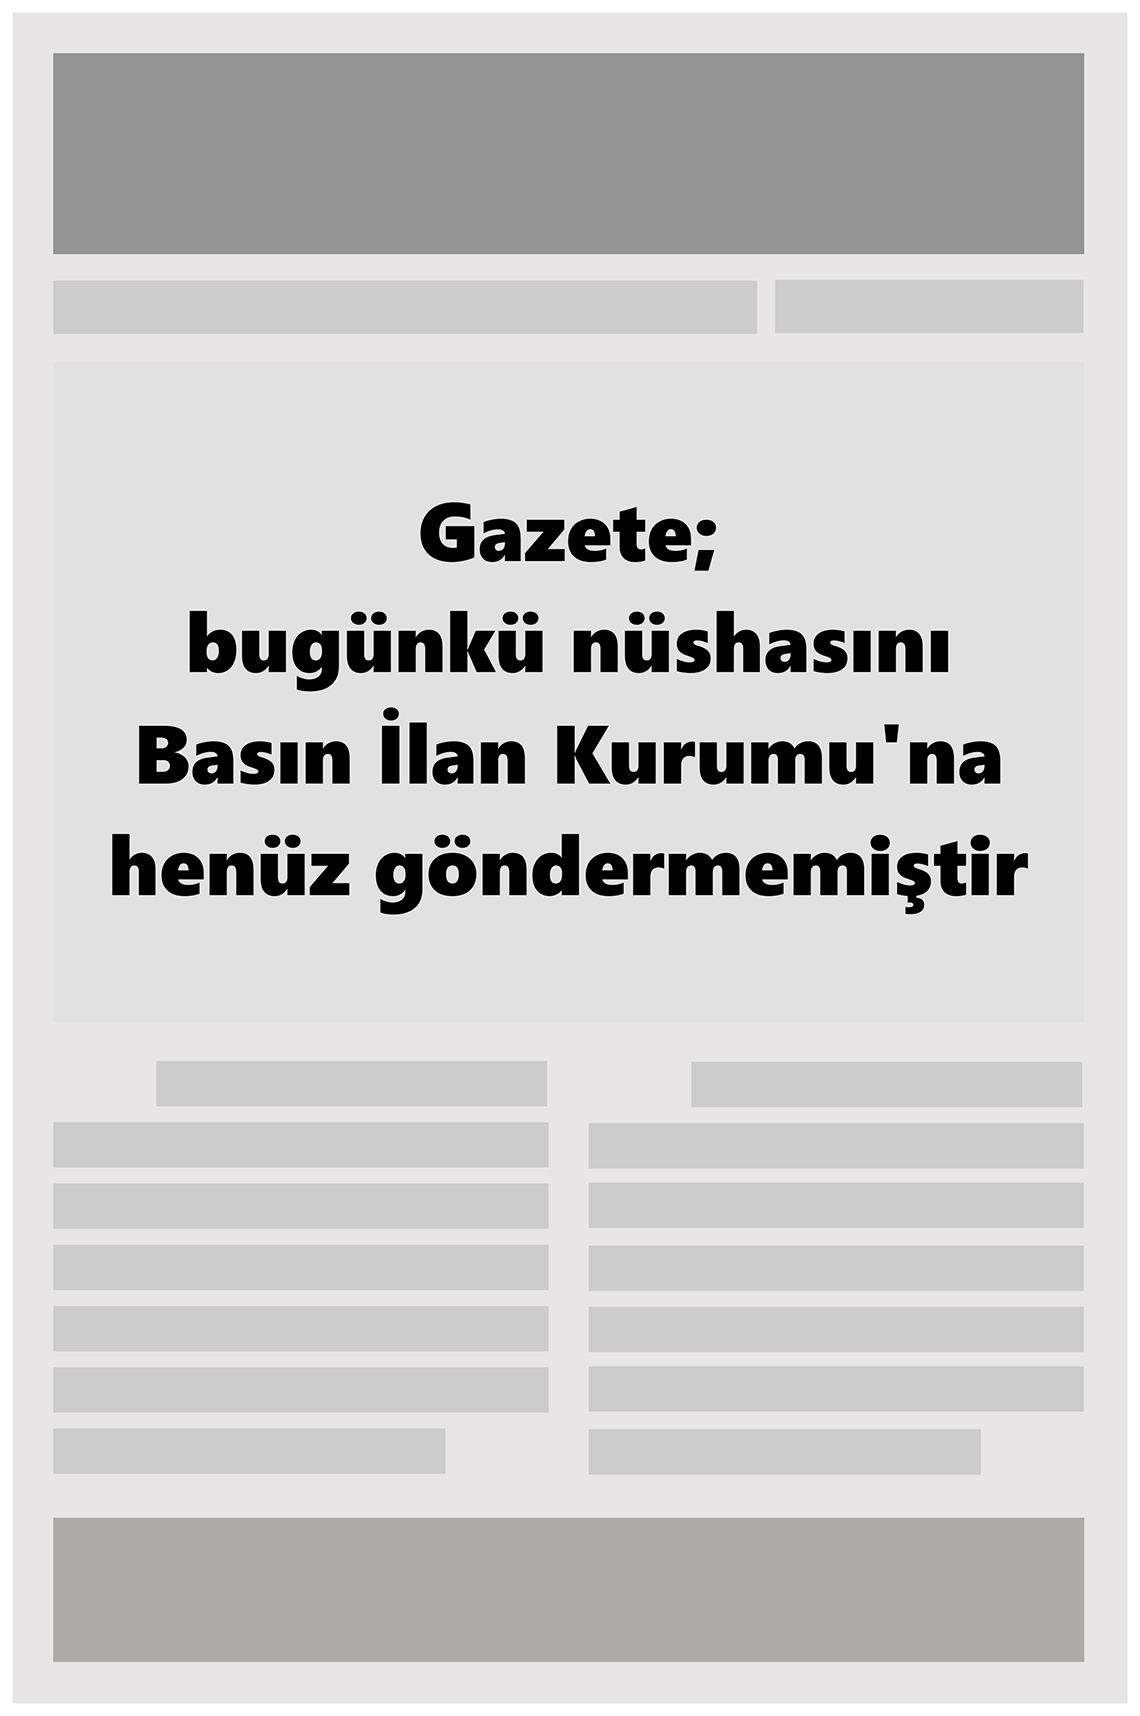 25 Eylül 2022 Balıkesir Haberci Gazete Manşeti